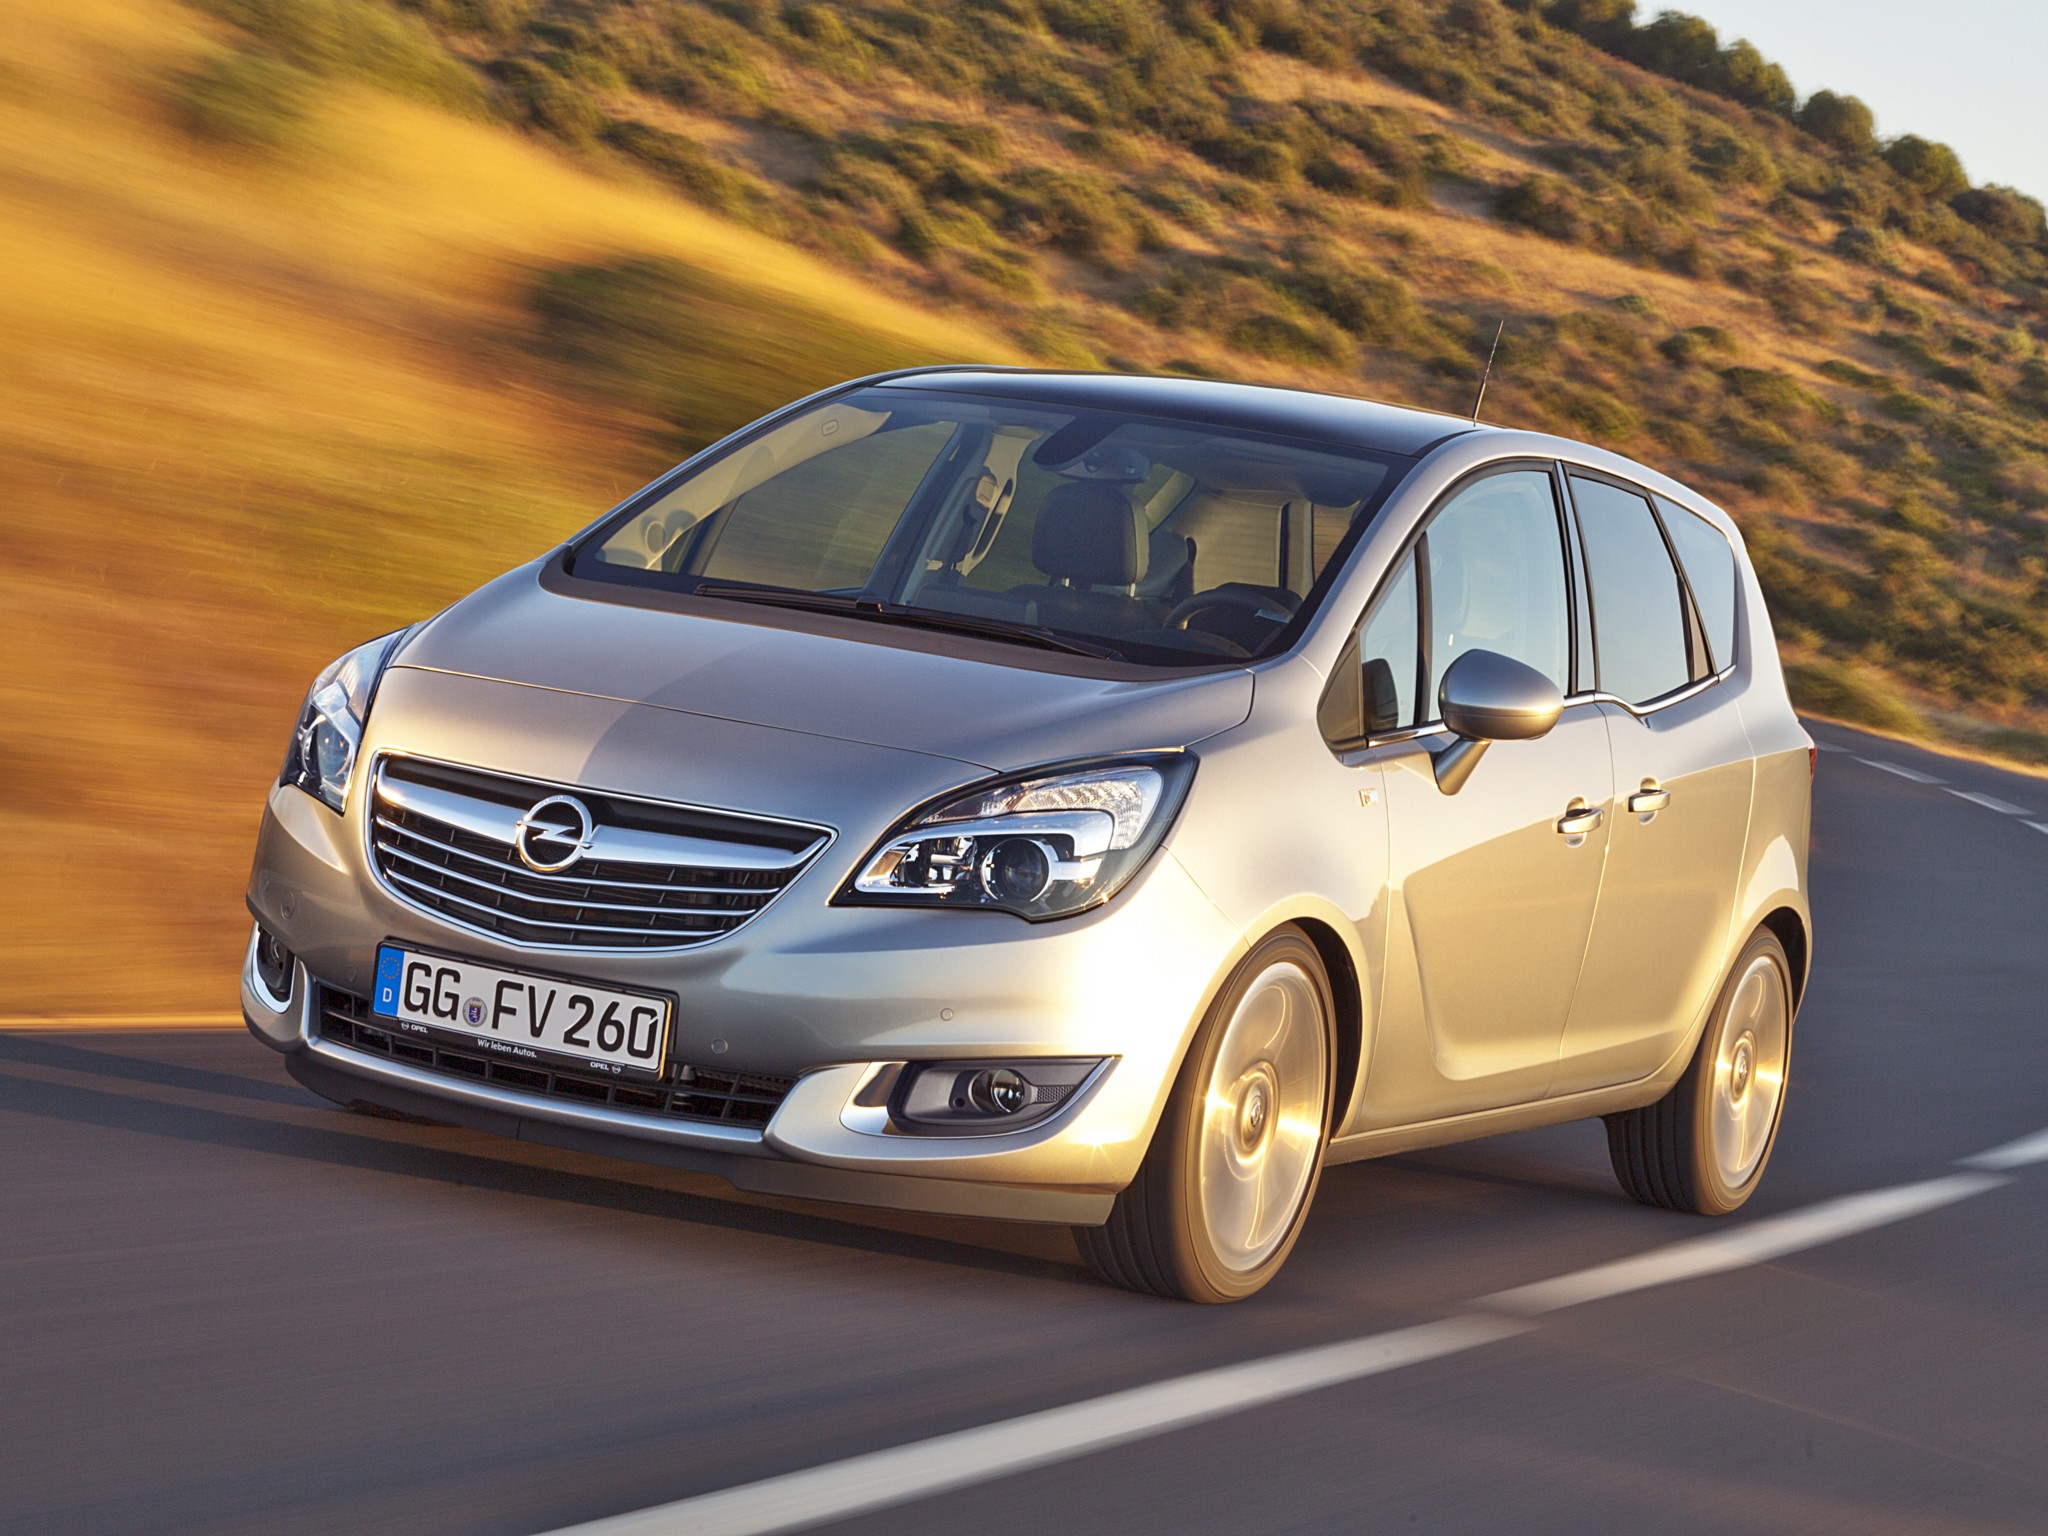 2014, Opel, Meriva,  b , Suv, Van Wallpaper